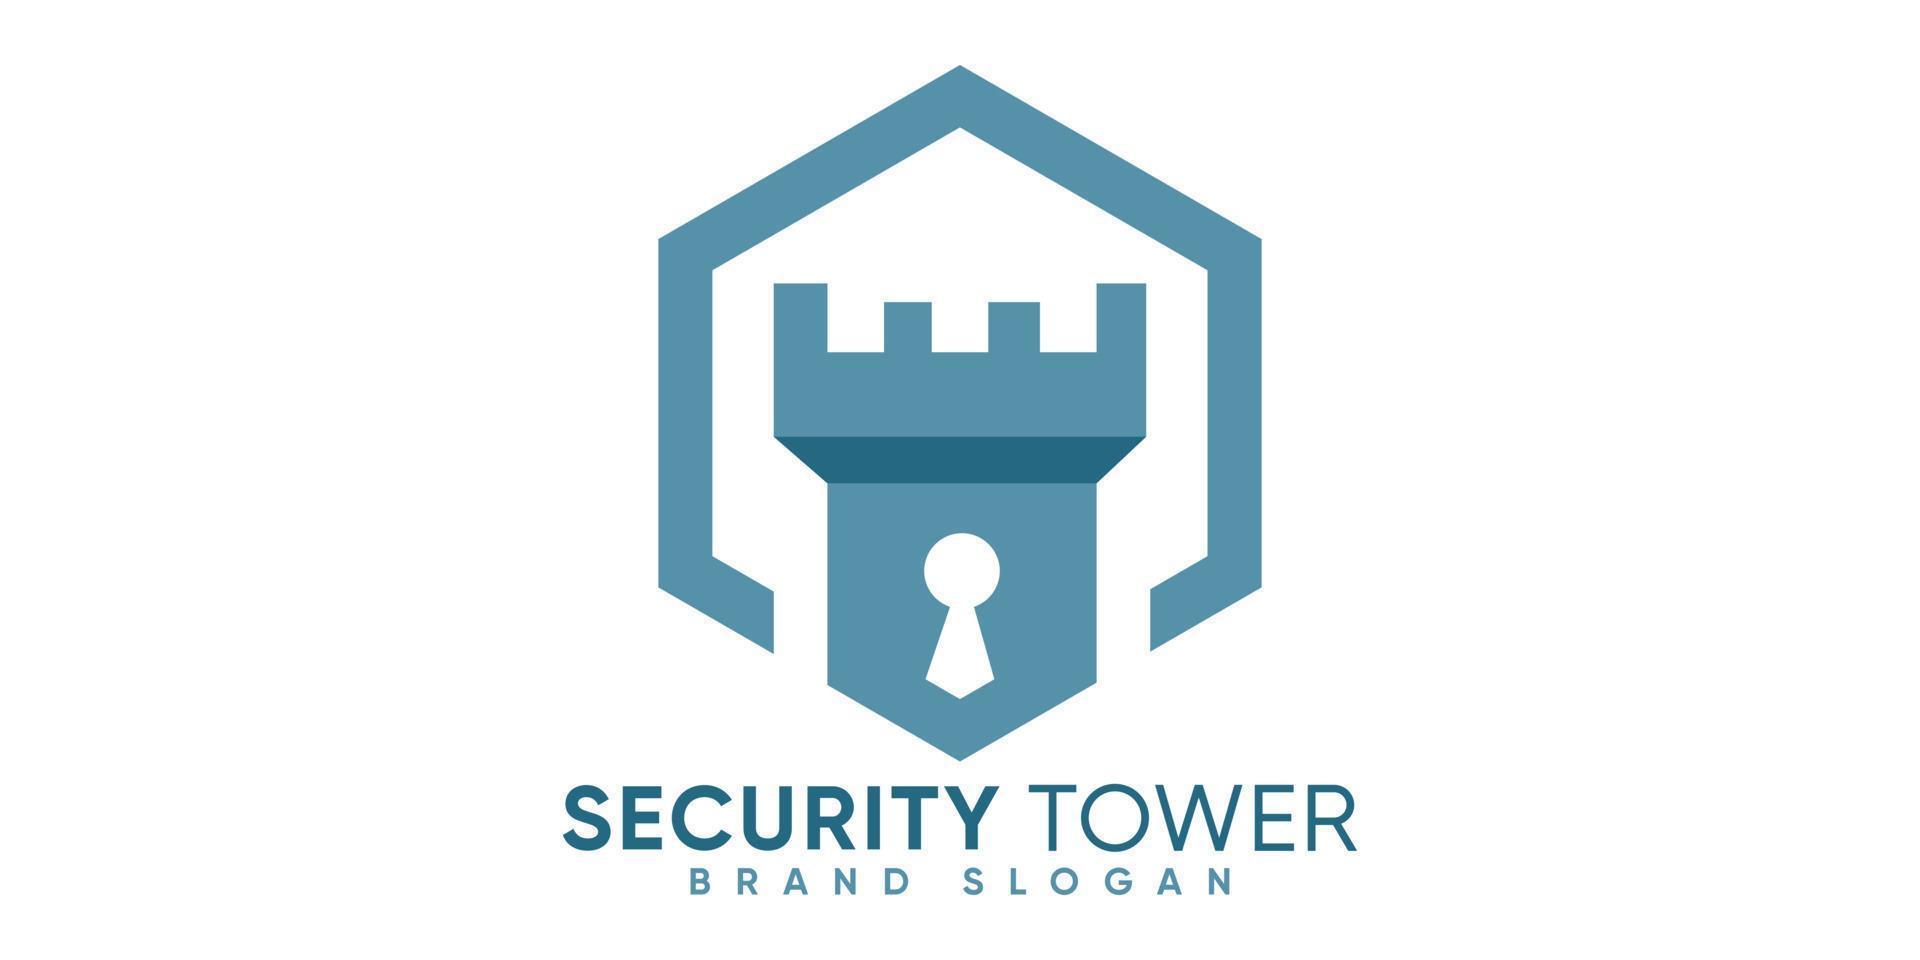 gemakkelijk veiligheid zeshoek toren logo met modern stijl premie vector